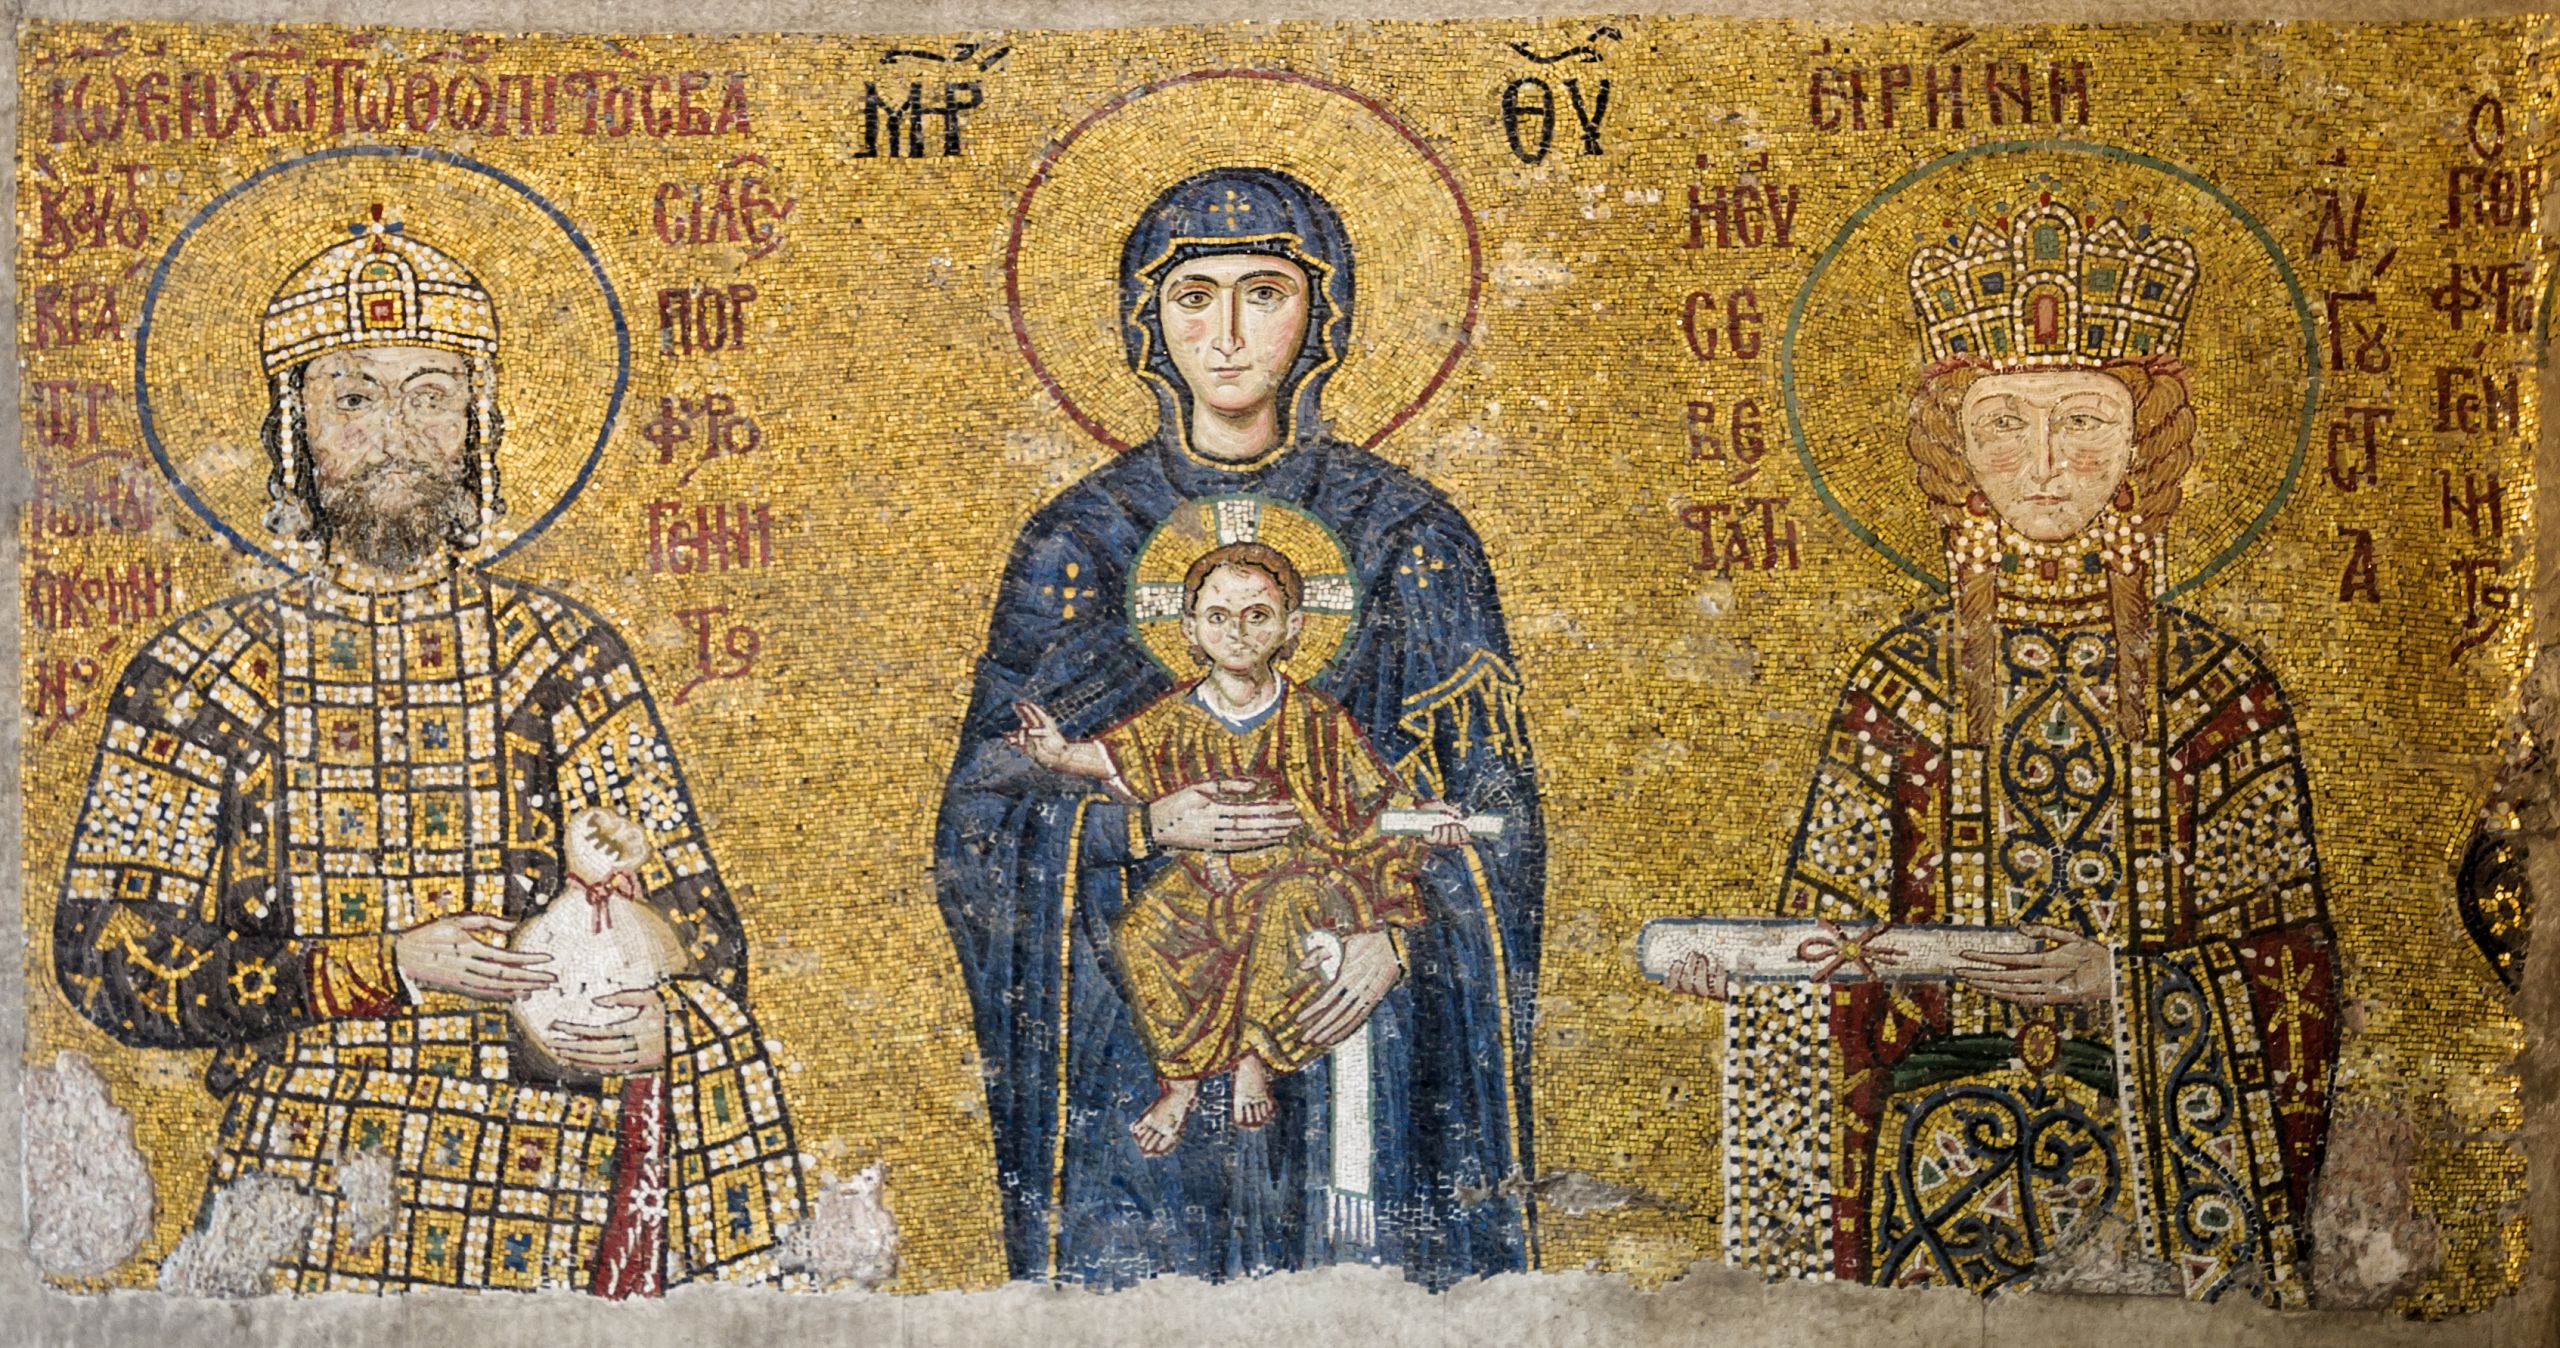 Ψηφιδωτό του ναού, που απεικονίζει τον Ιωάννη Β’ Κομνηνό, την Παναγία με τον Ιησού και την Ειρήνη της Ουγγαρίας. Photo Credits: Wikimedia Commons